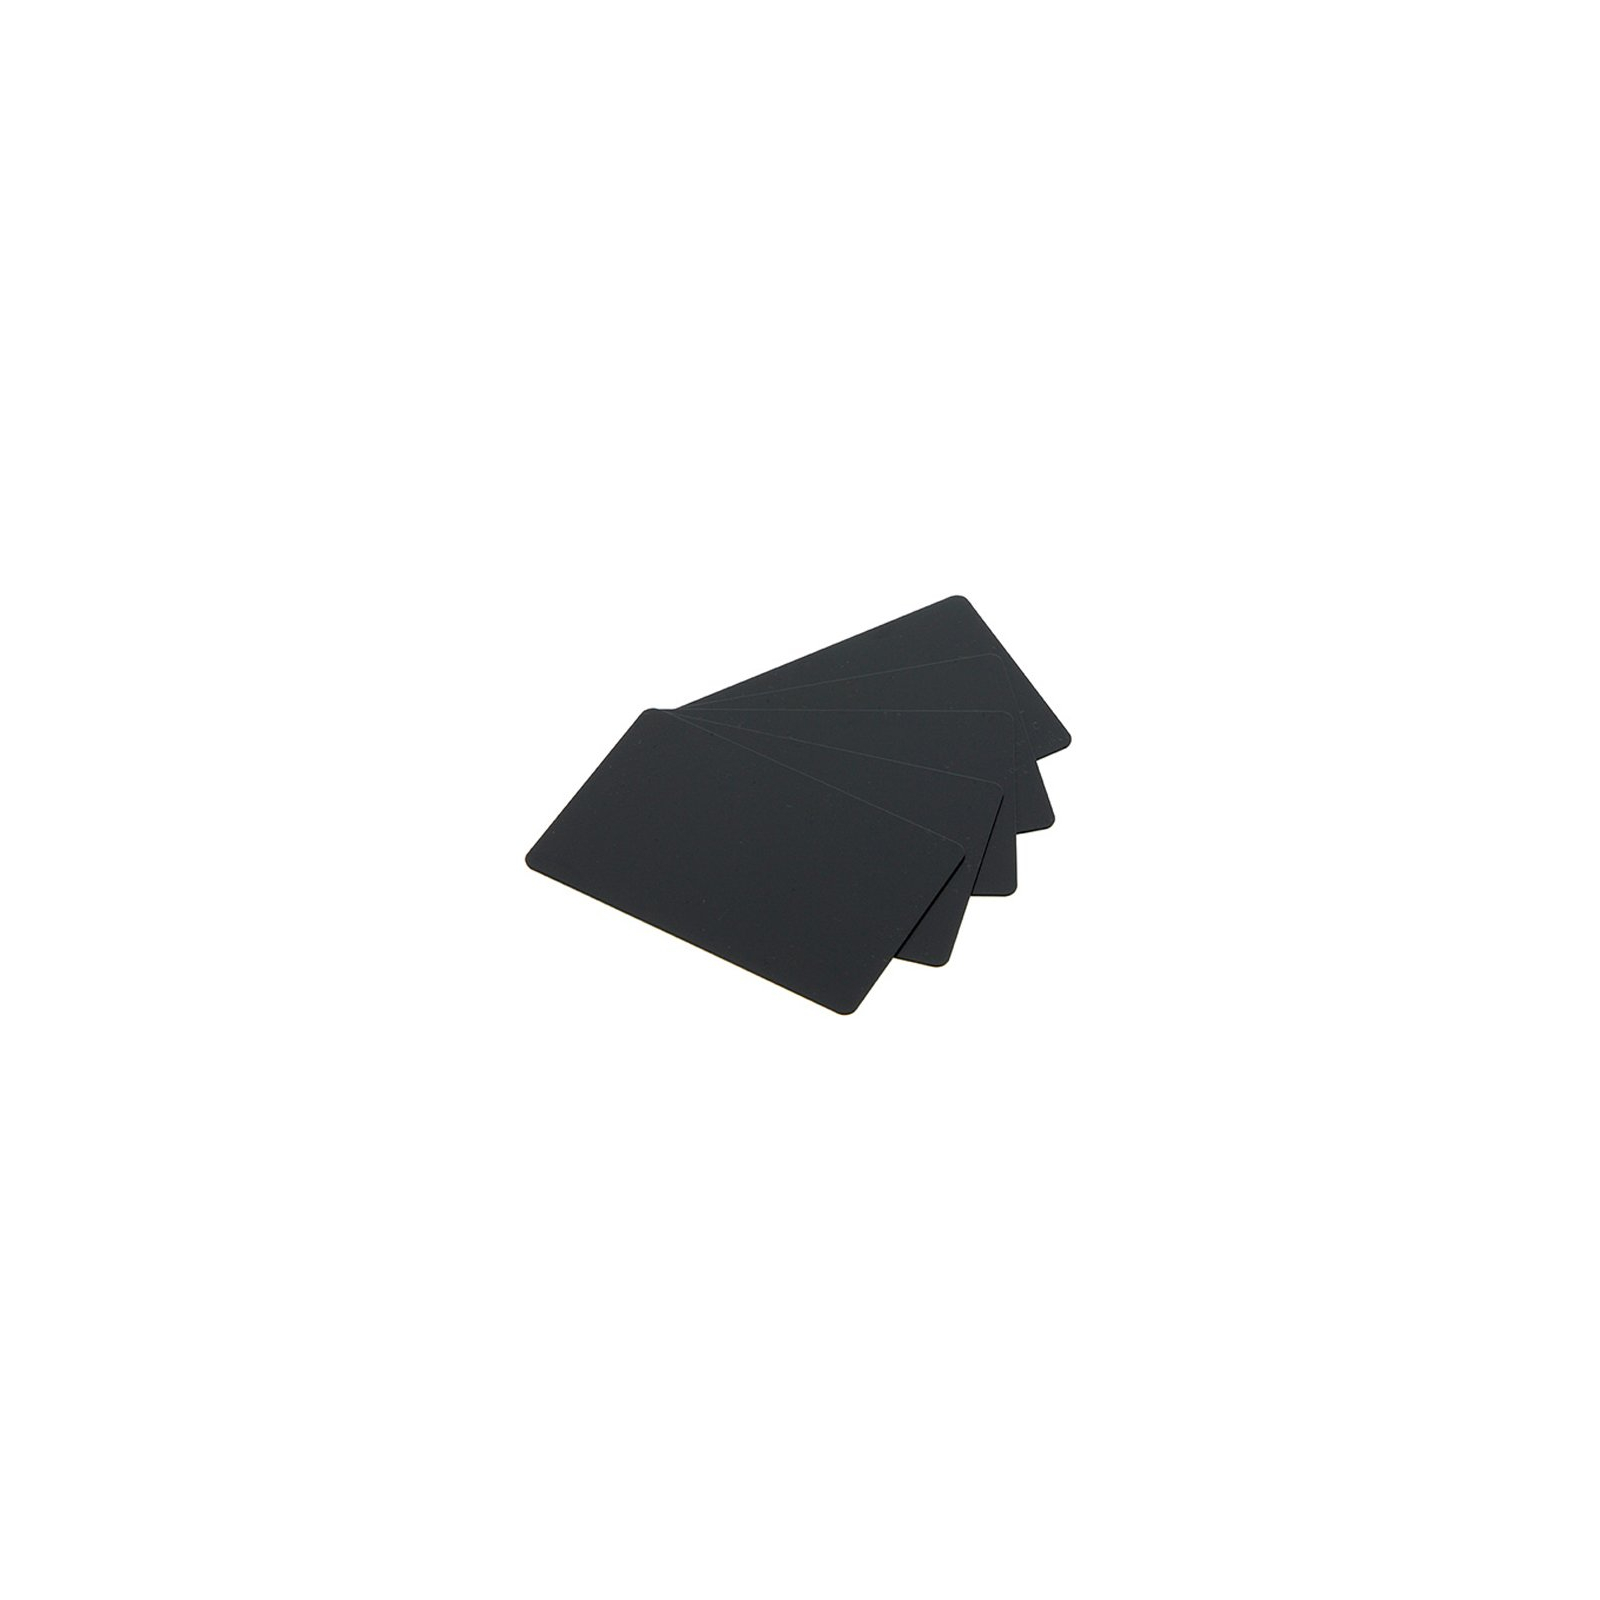 Карточка пластиковая чистая Evolis PVC-U 30 mil, чорные, матовые, 5х100 штук (C8001)